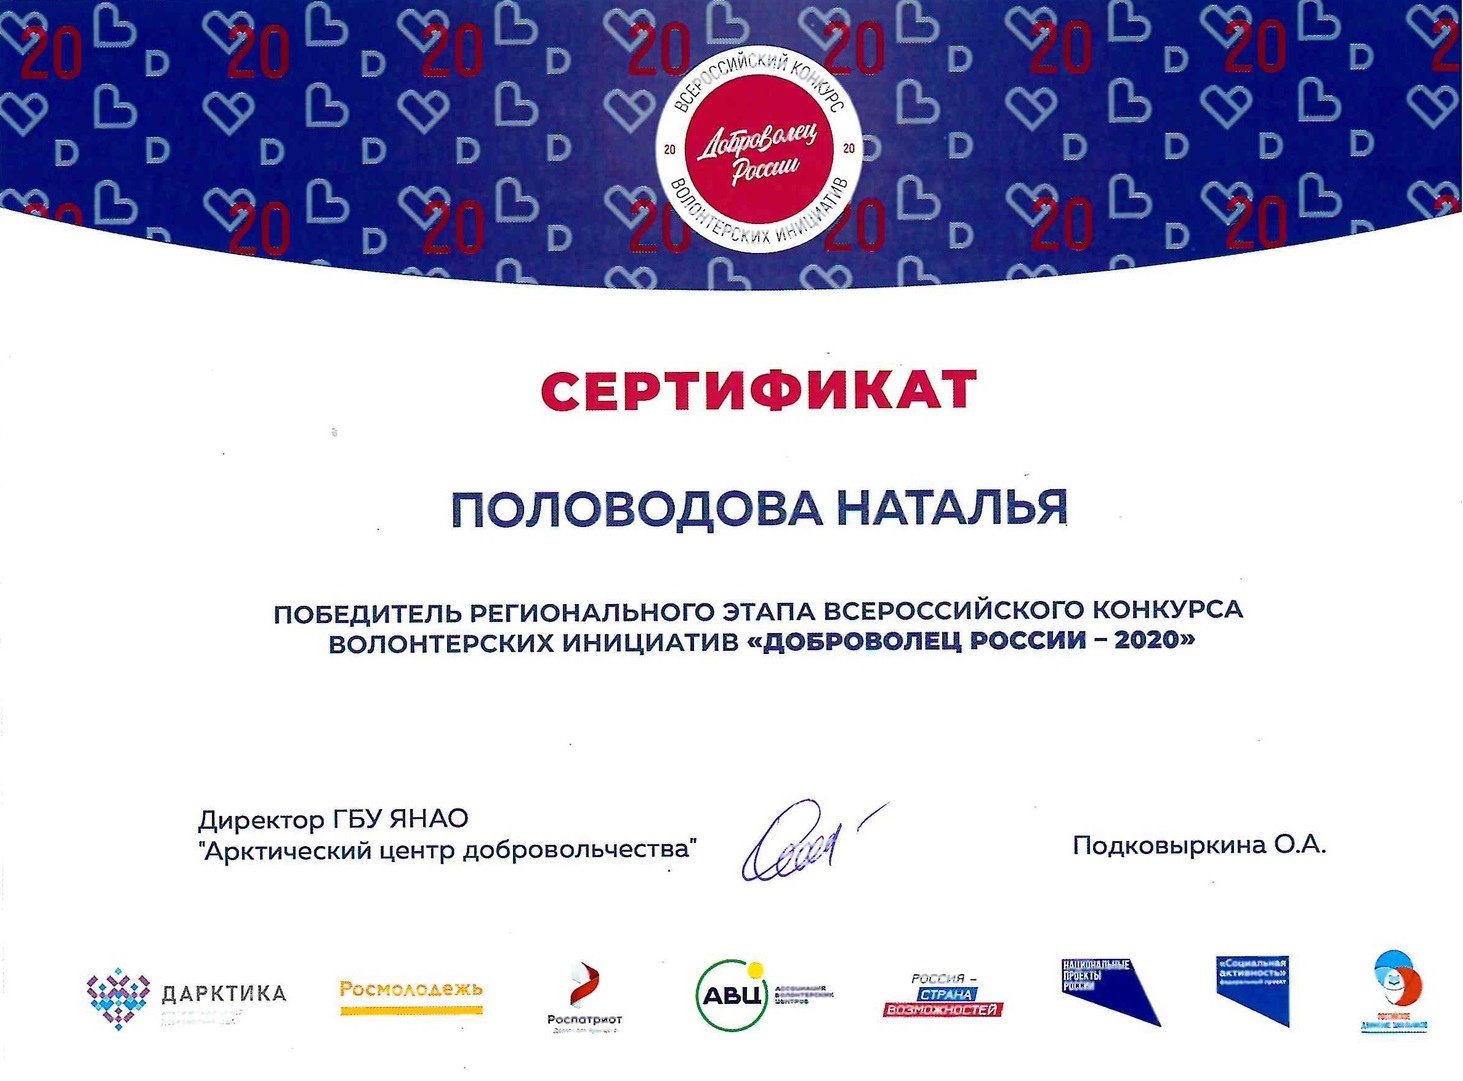 Сертификат победителя регионального этапа Всероссийского конкурса«Доброволец России - 2020».